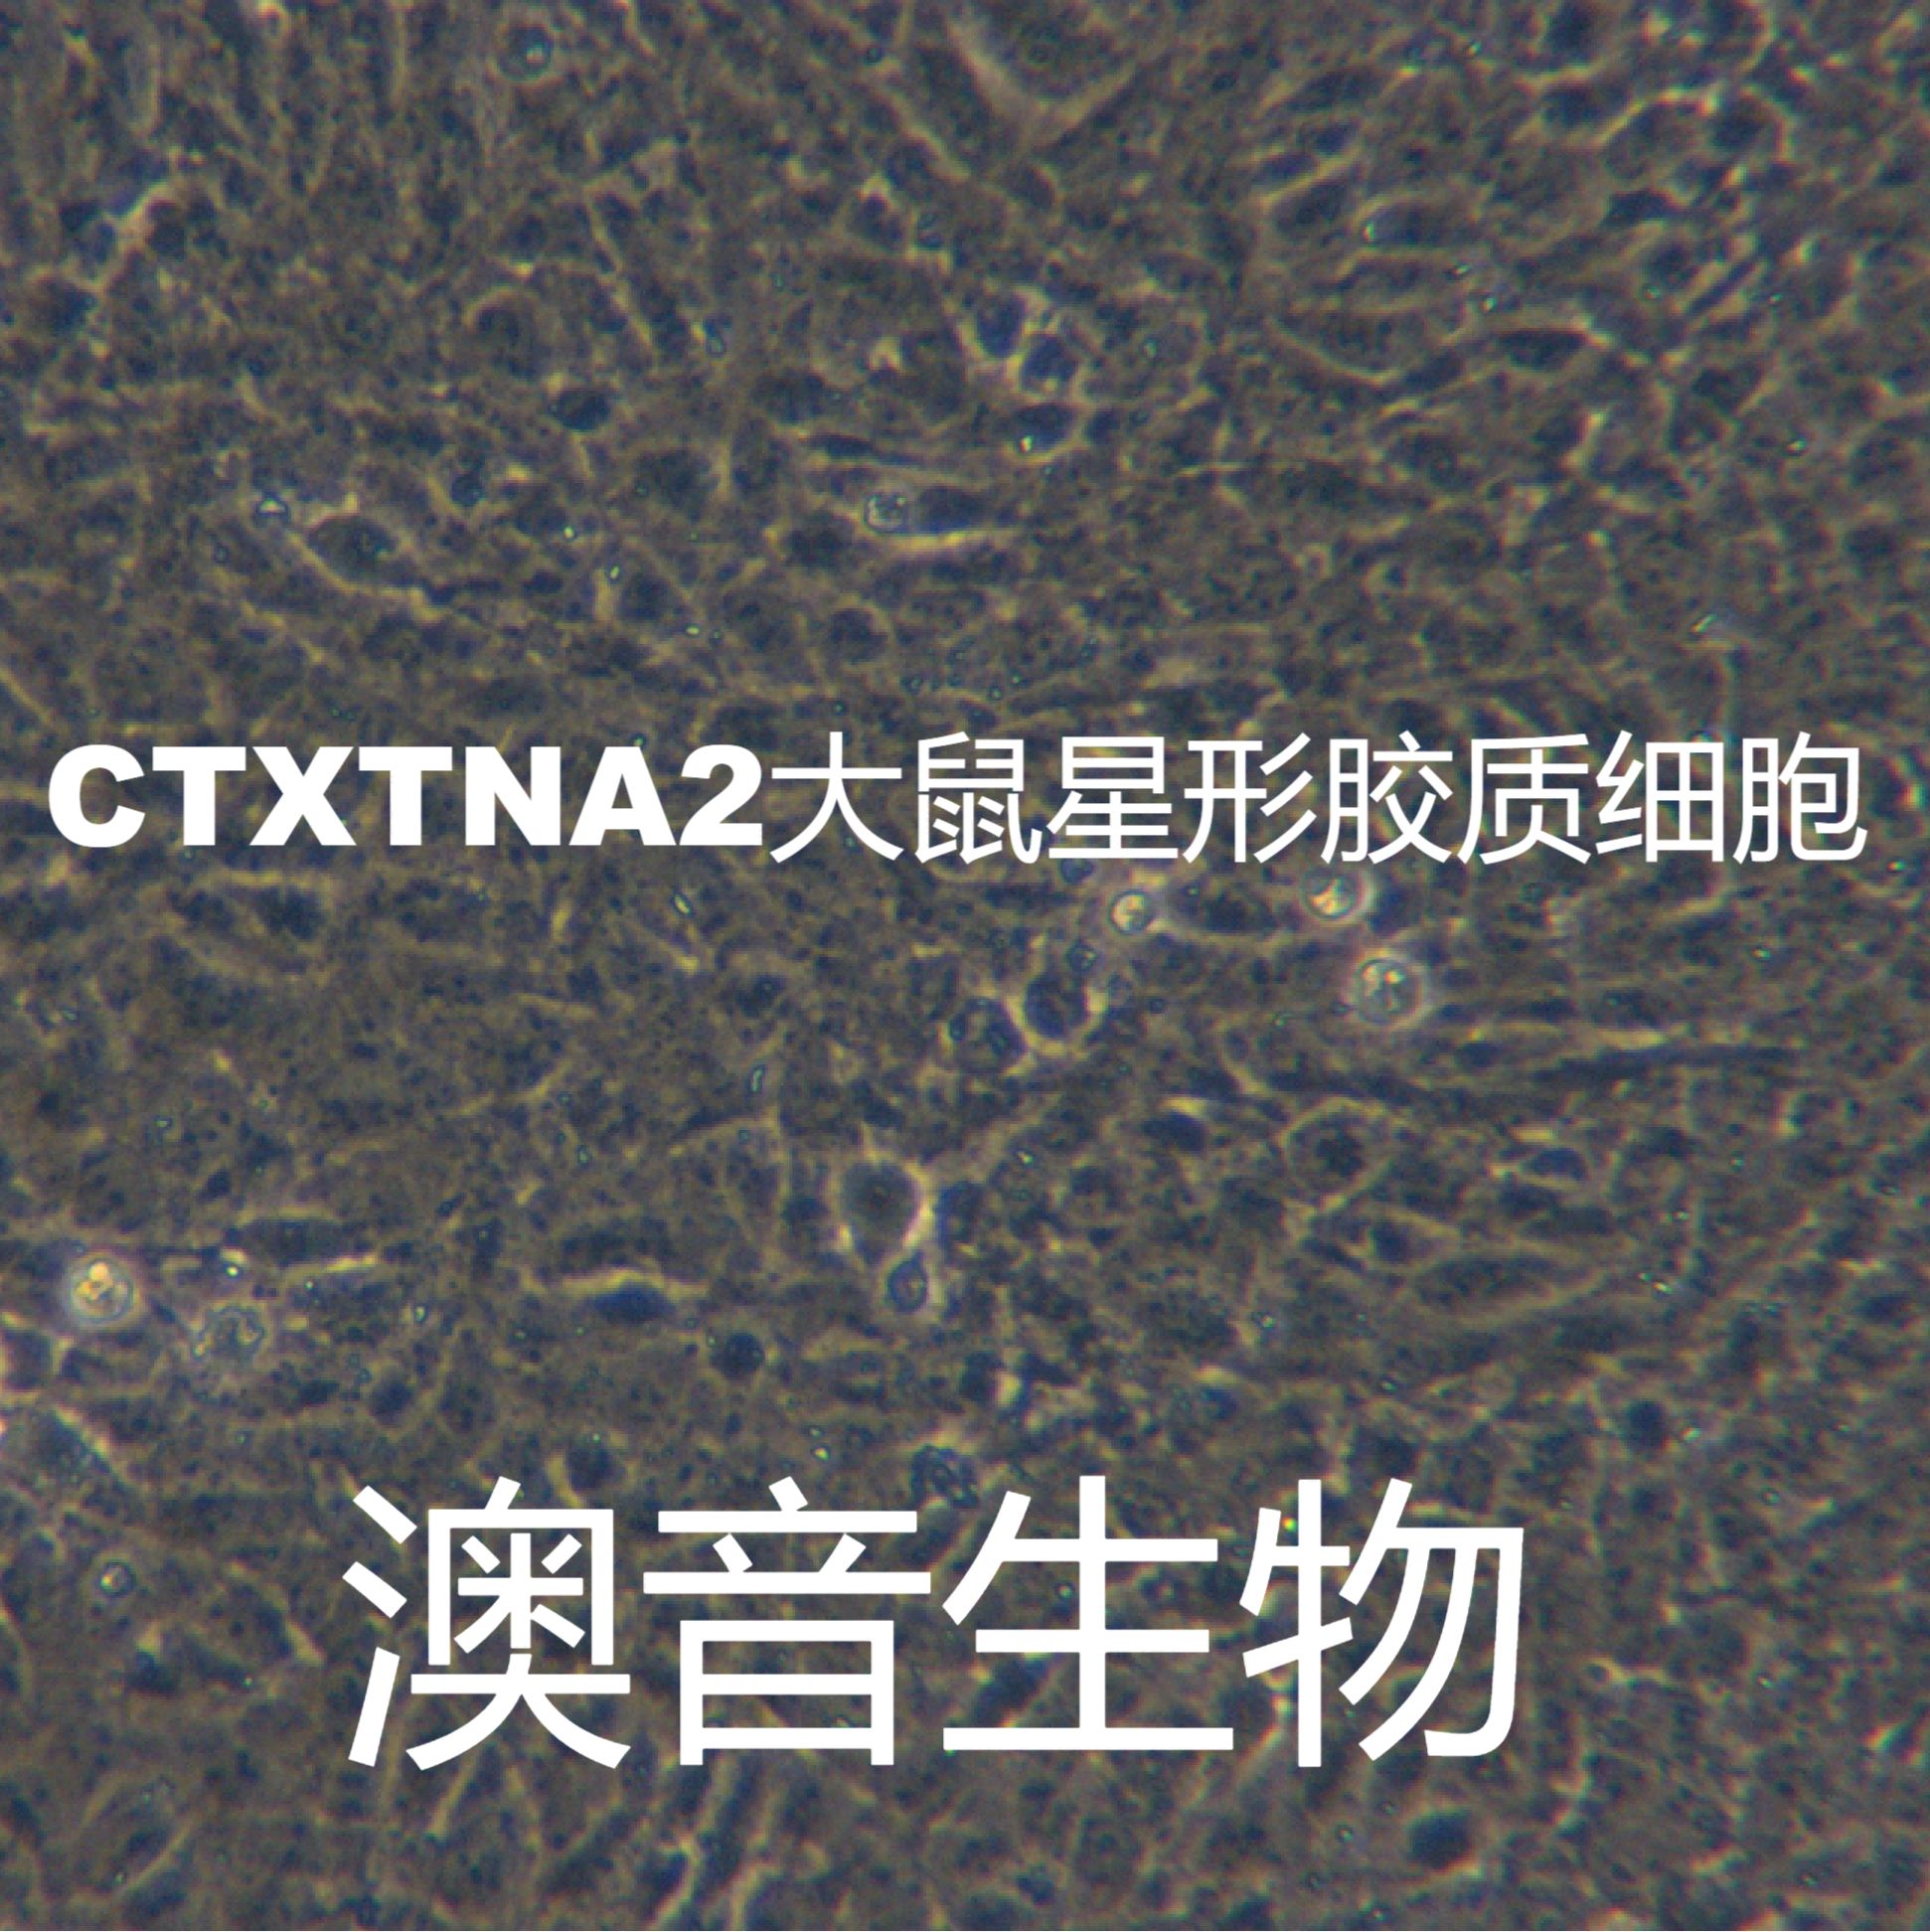 CTX TNA2【CTXTNA2】大鼠星形胶质细胞